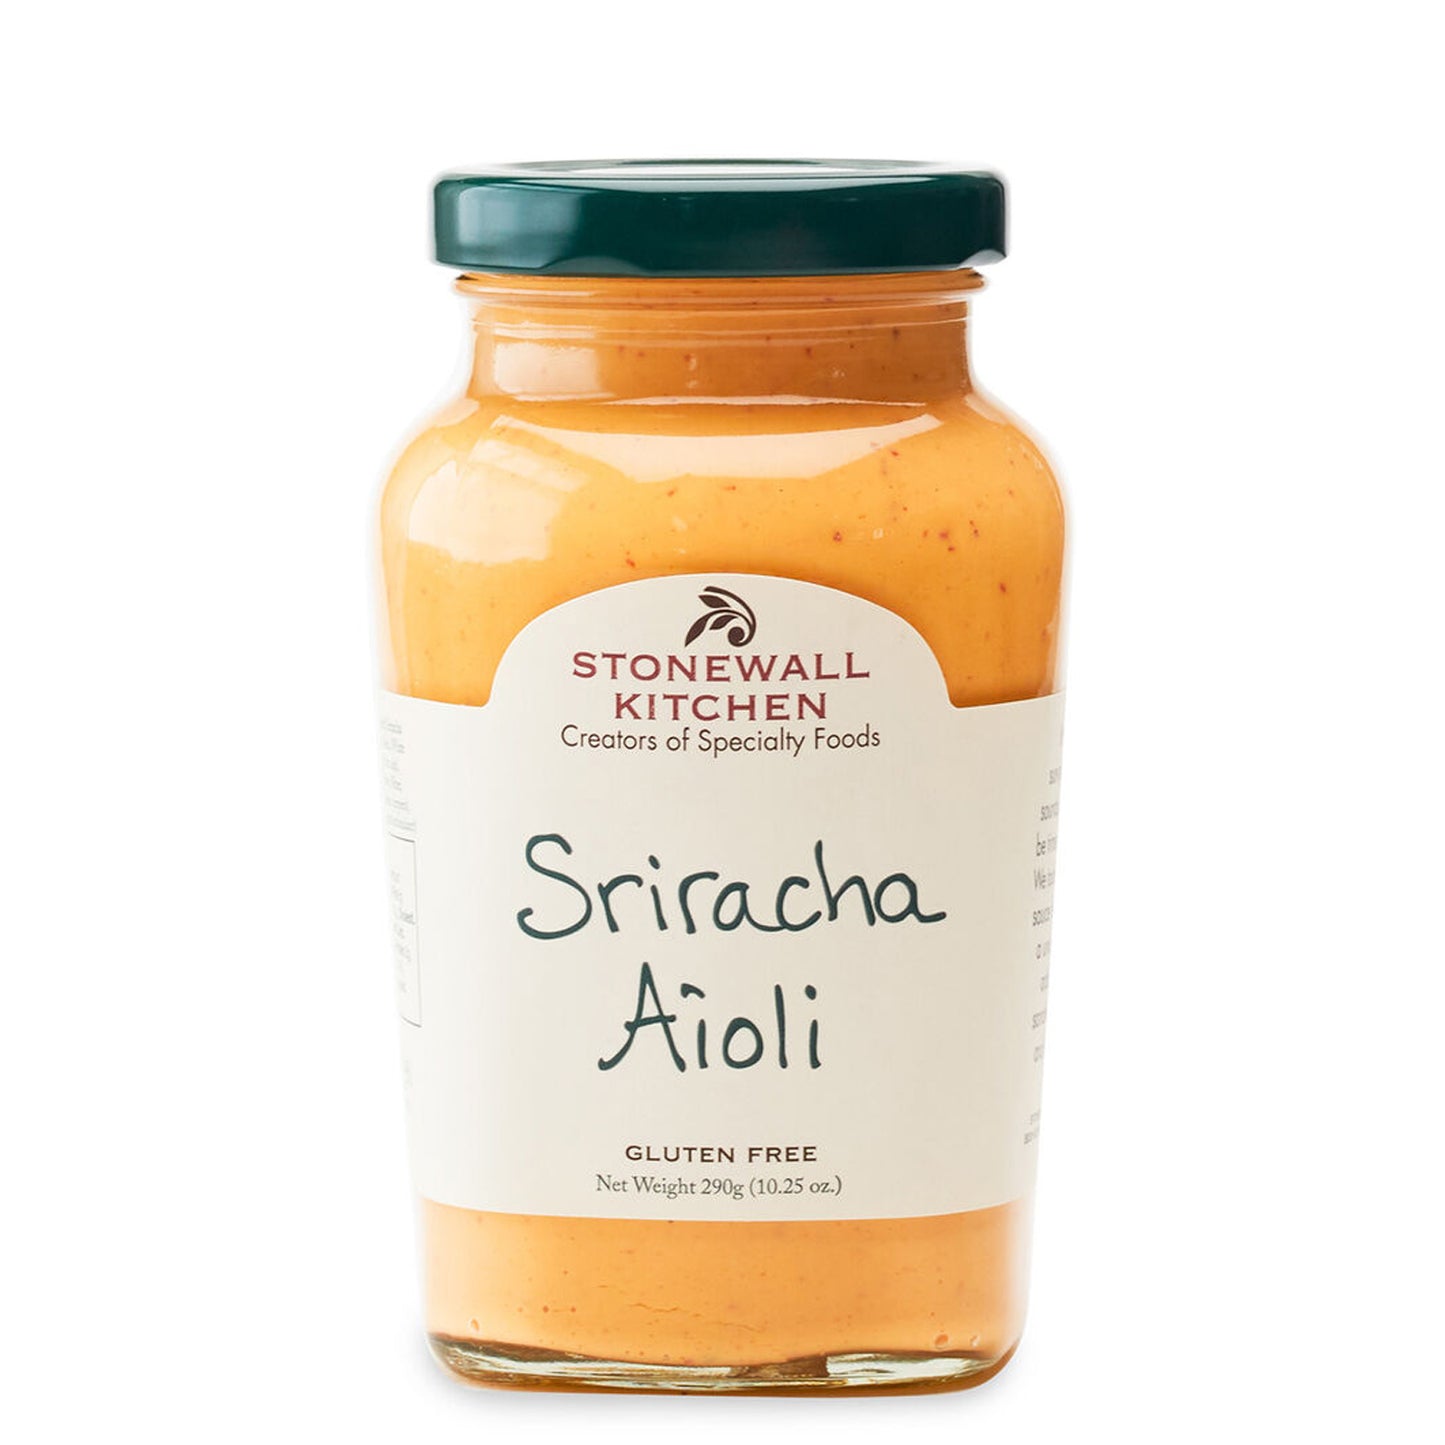 Alioli de Sriracha